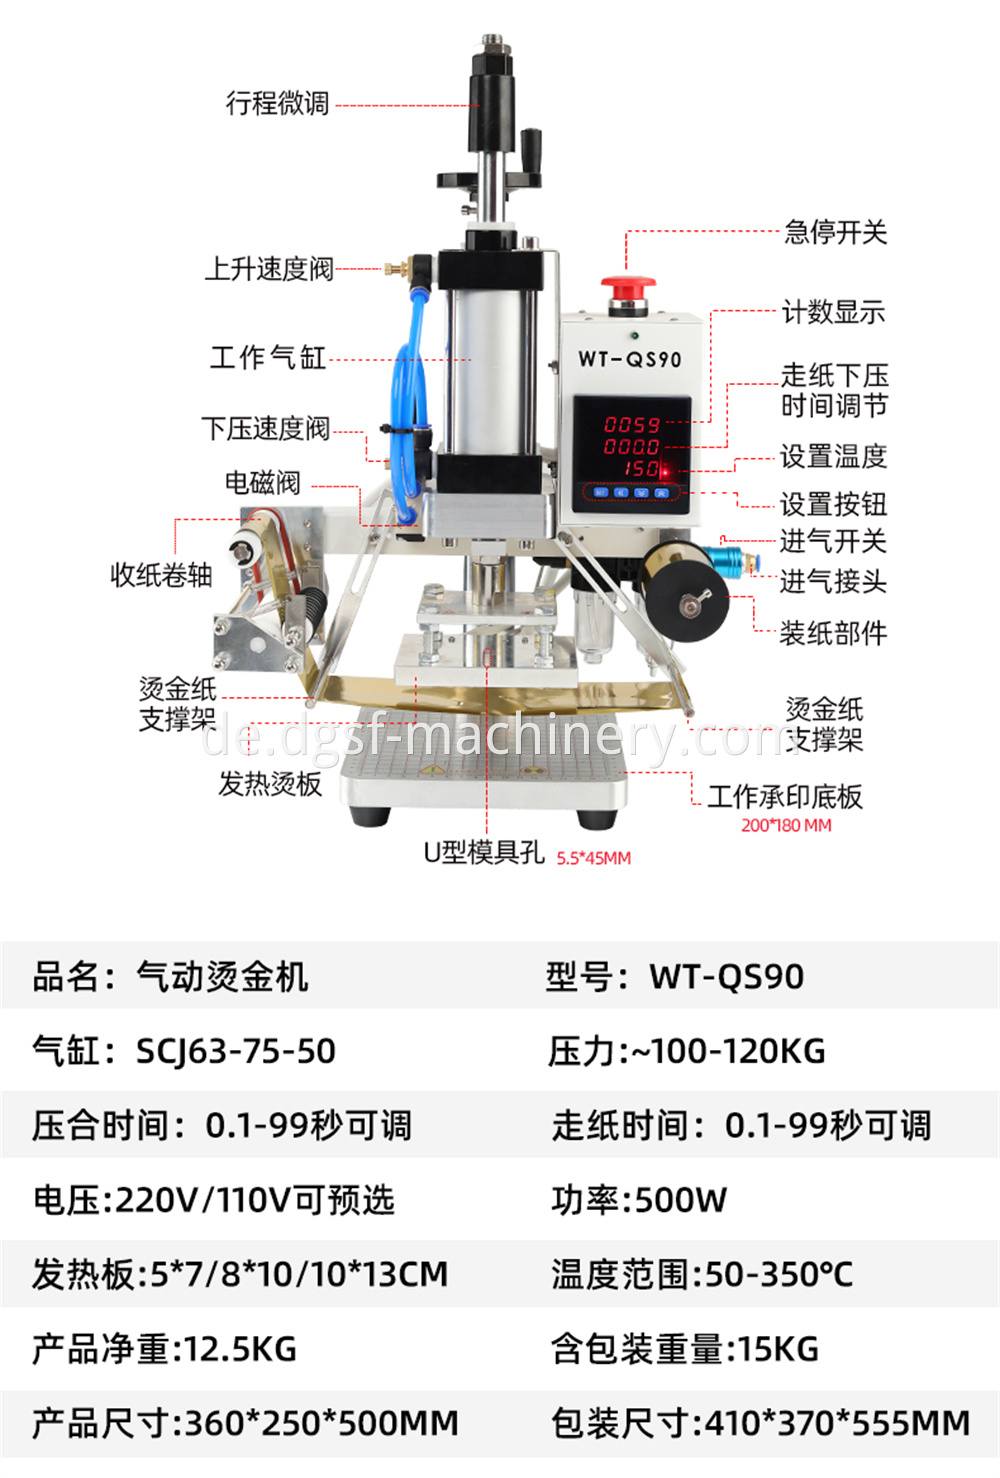 Pneumatic Bronzing Machine 6 Jpg